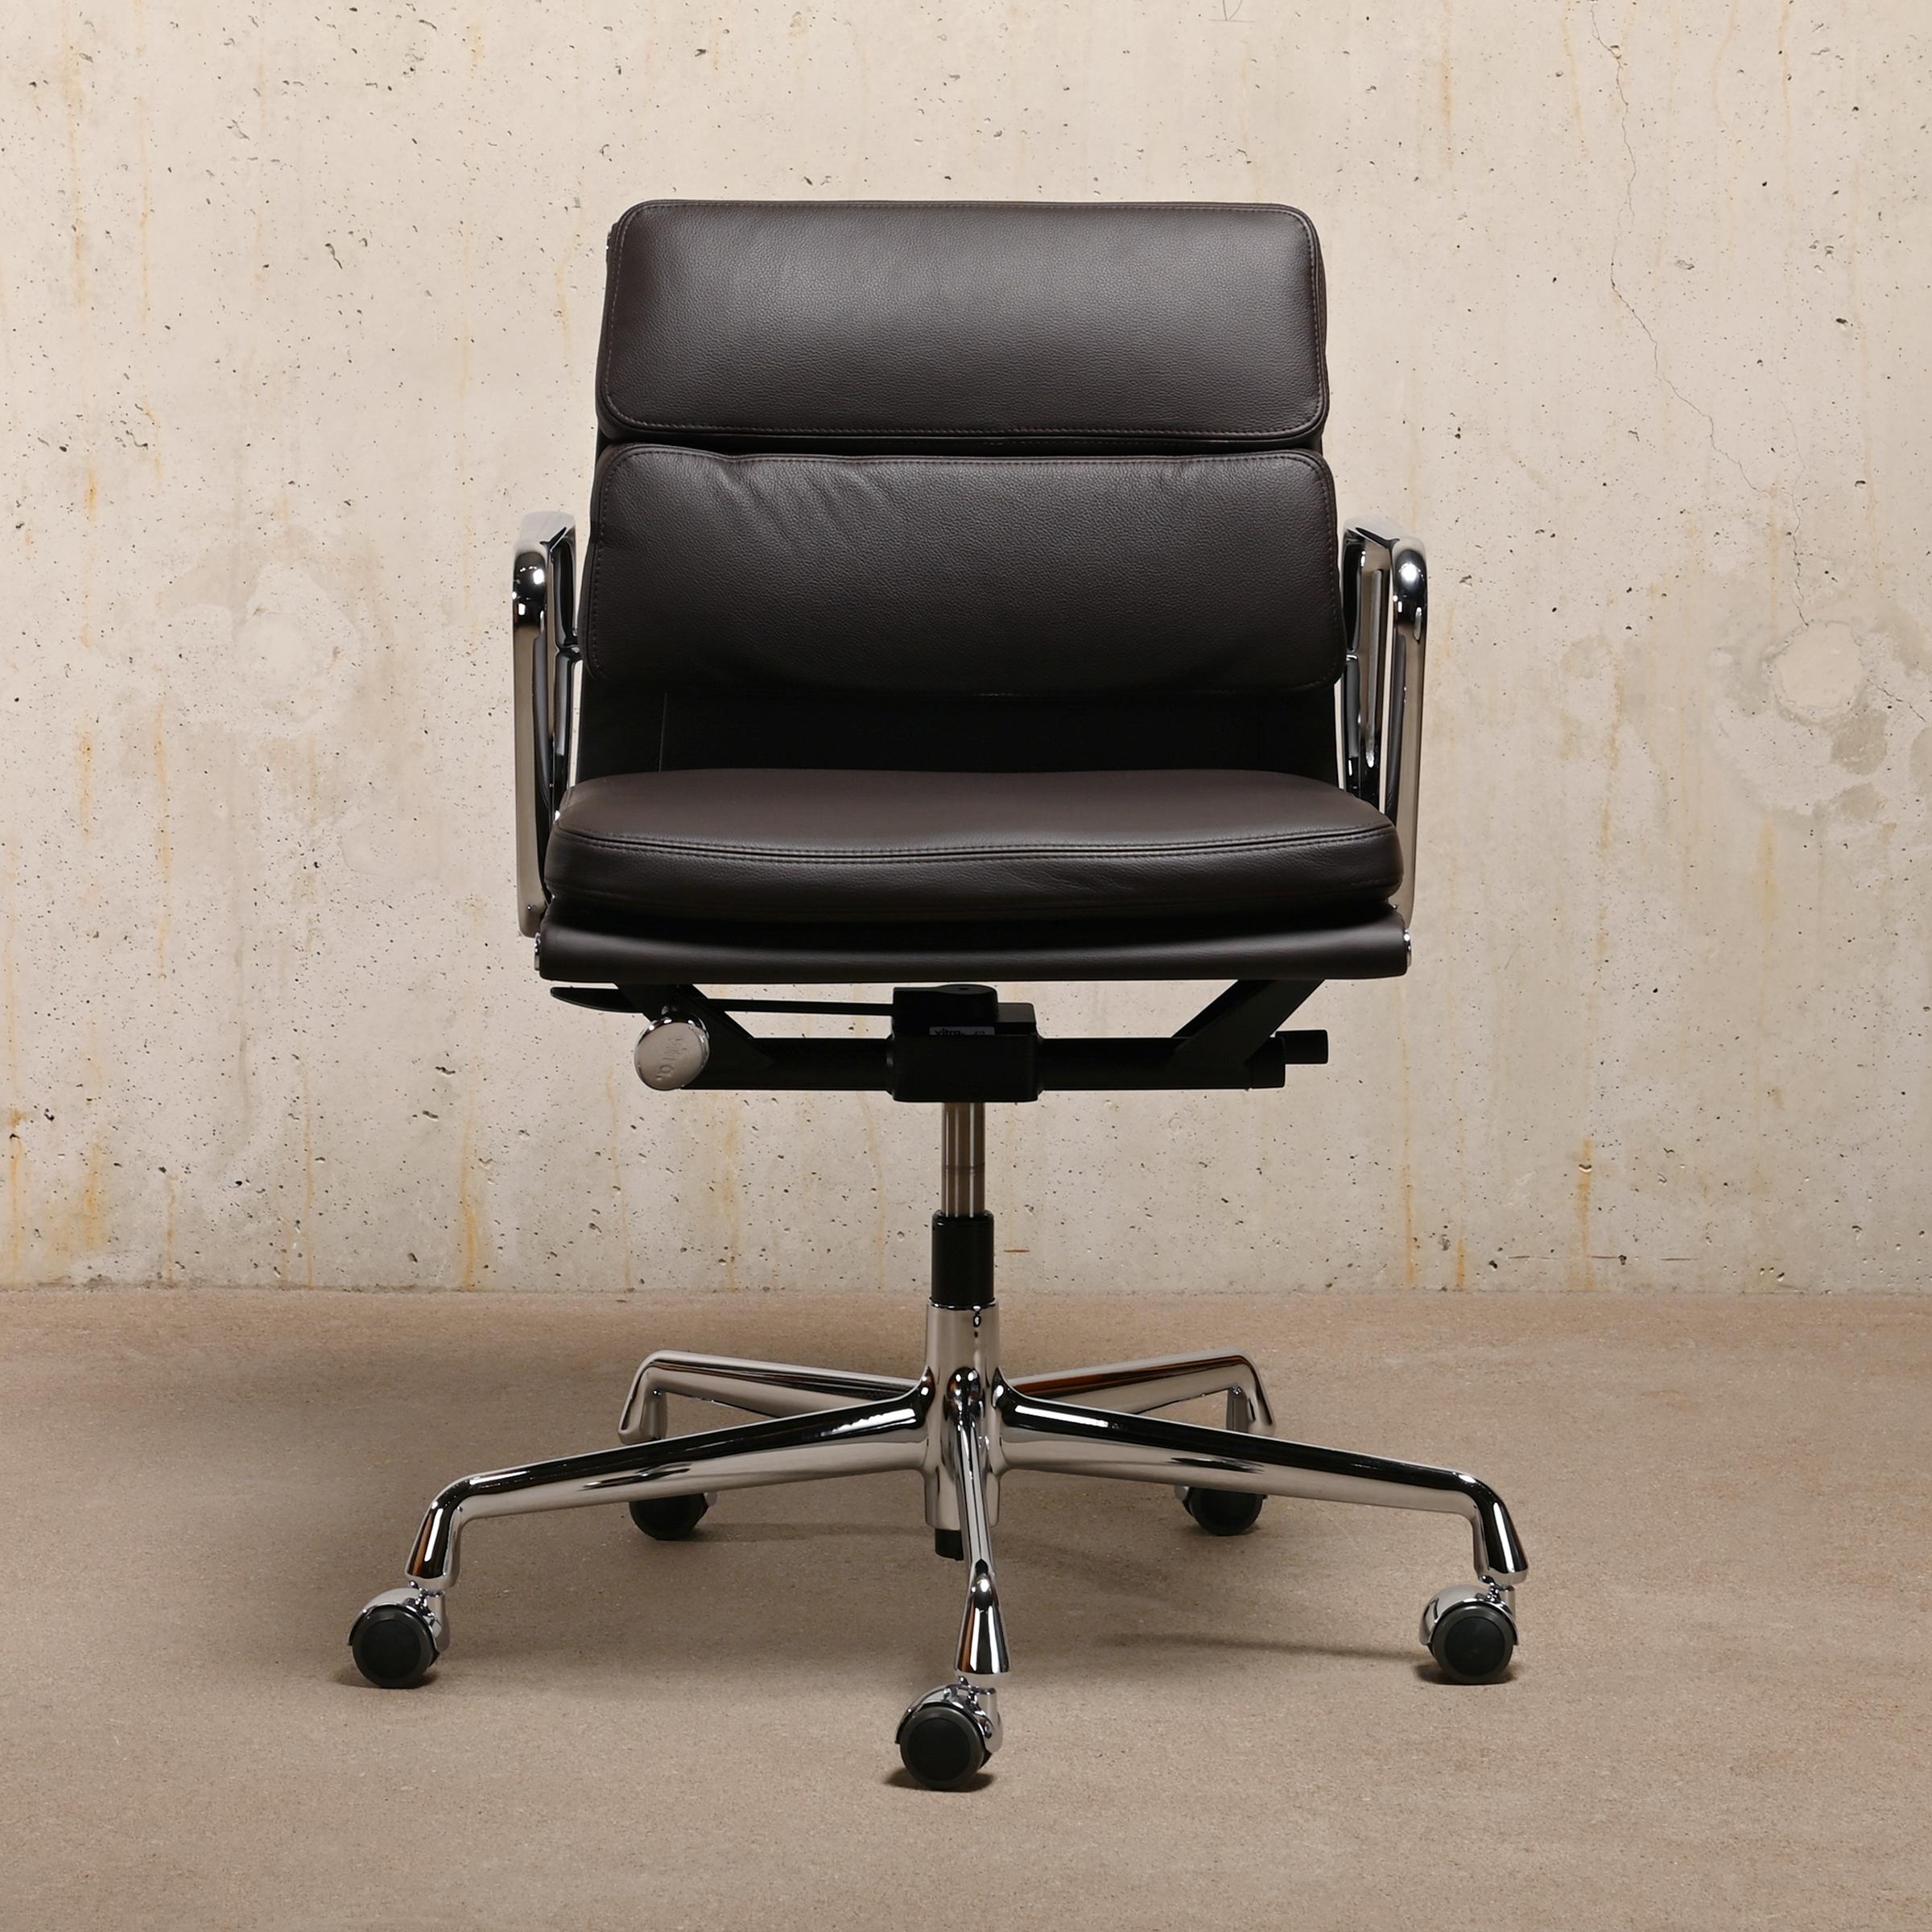 Magnifique nouvelle chaise de bureau EA217 appartenant à la série iconique Aluminium Series conçue par Charles & Ray Eames pour Herman Miller (US) / Vitra (EU). Un confort exceptionnel est garanti grâce aux coussins en cuir souple, au réglage en